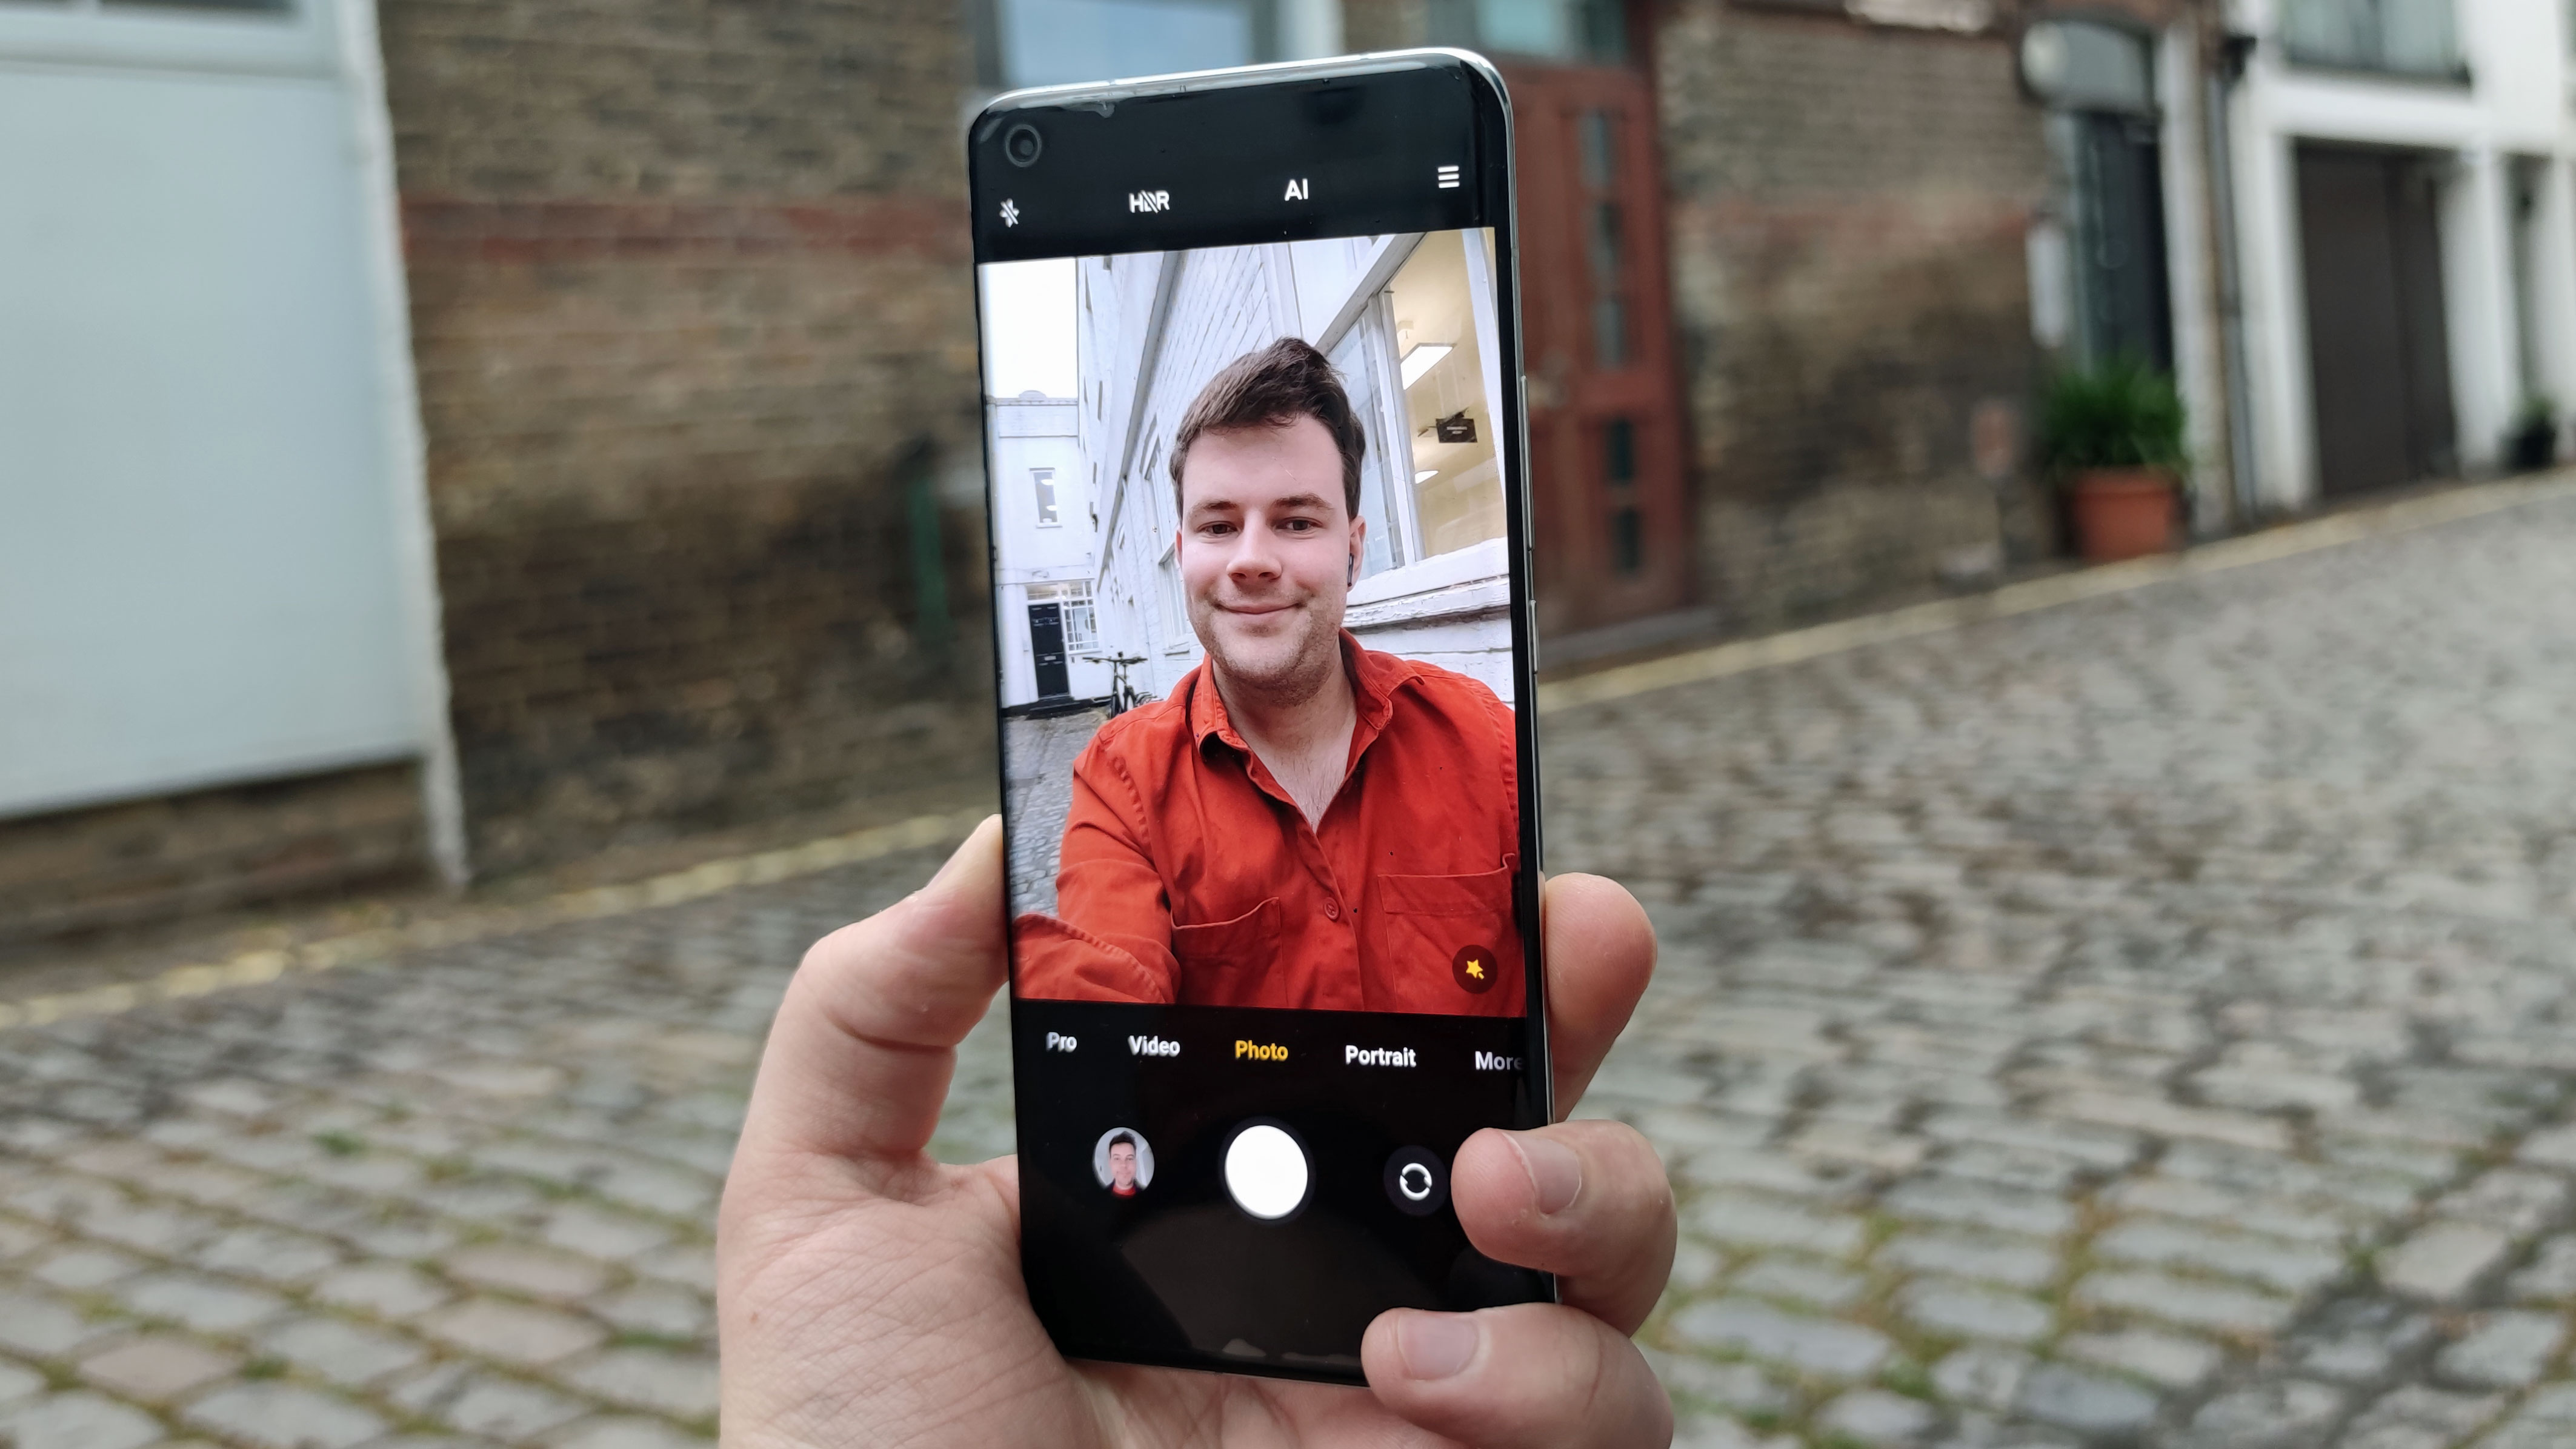 Обзор Камер Телефонов Xiaomi